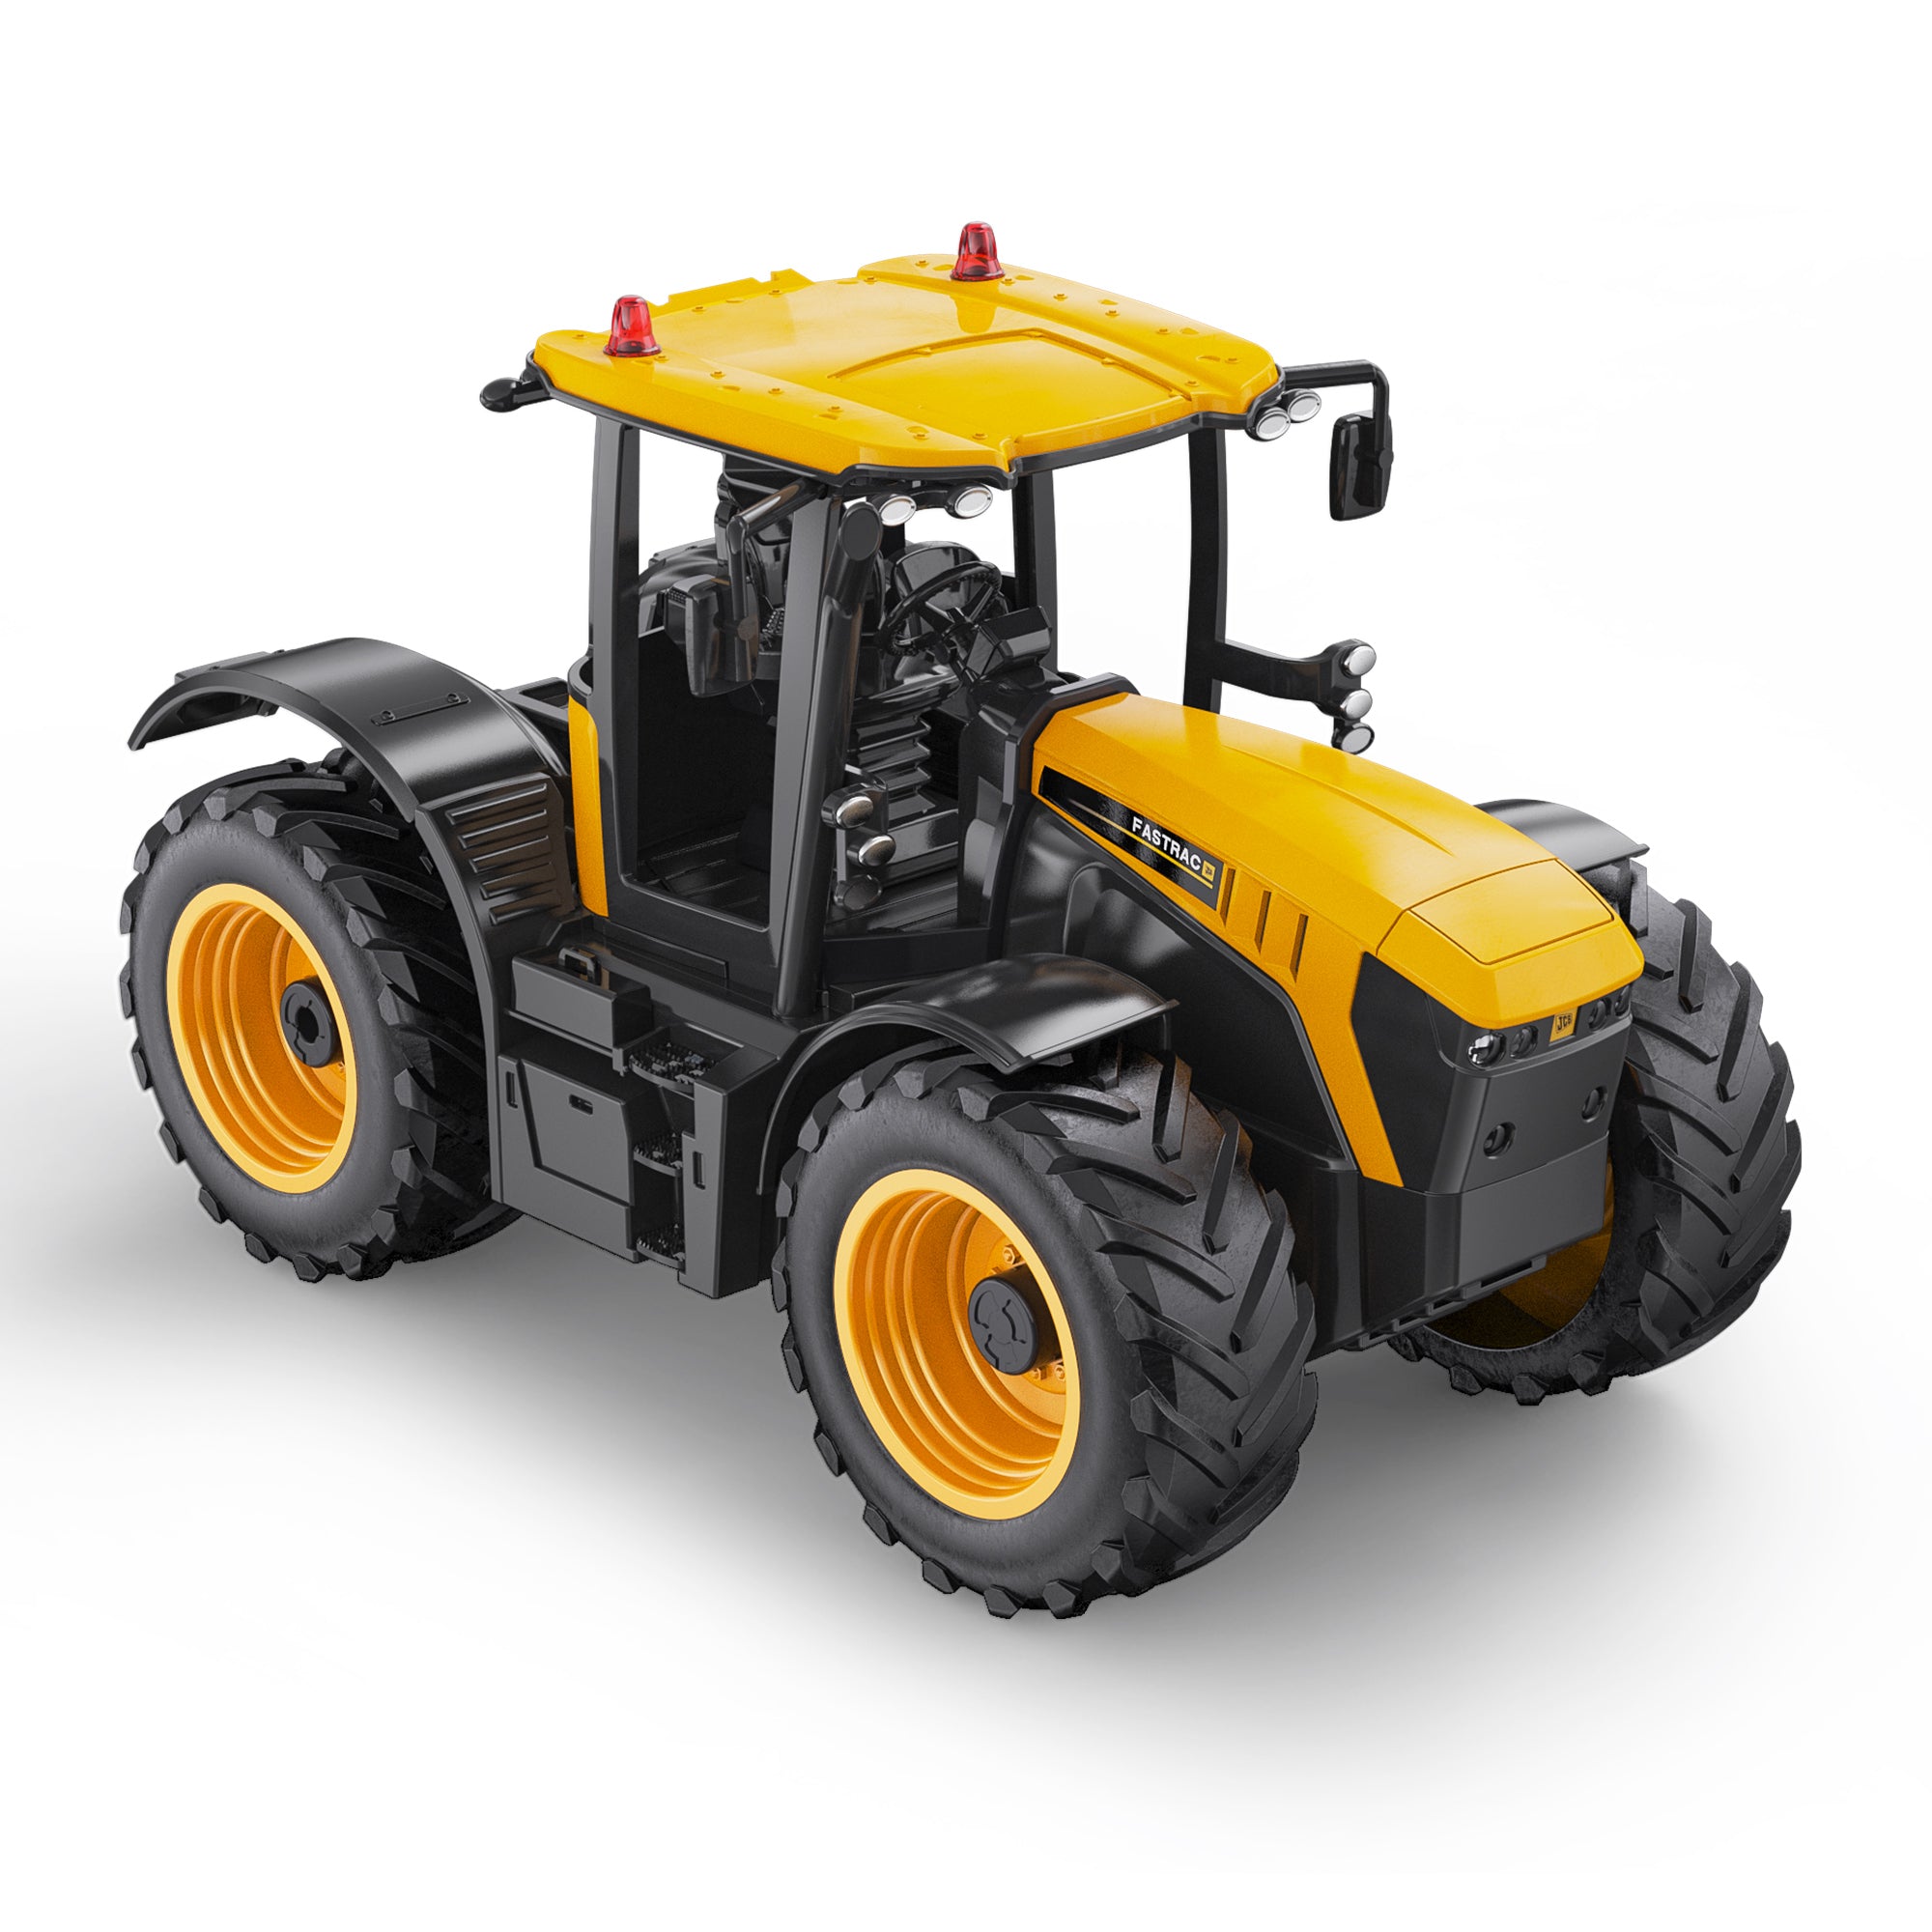 DOUBLE E  JCB Licensed Remote Control Farm Tractor |  E359-003